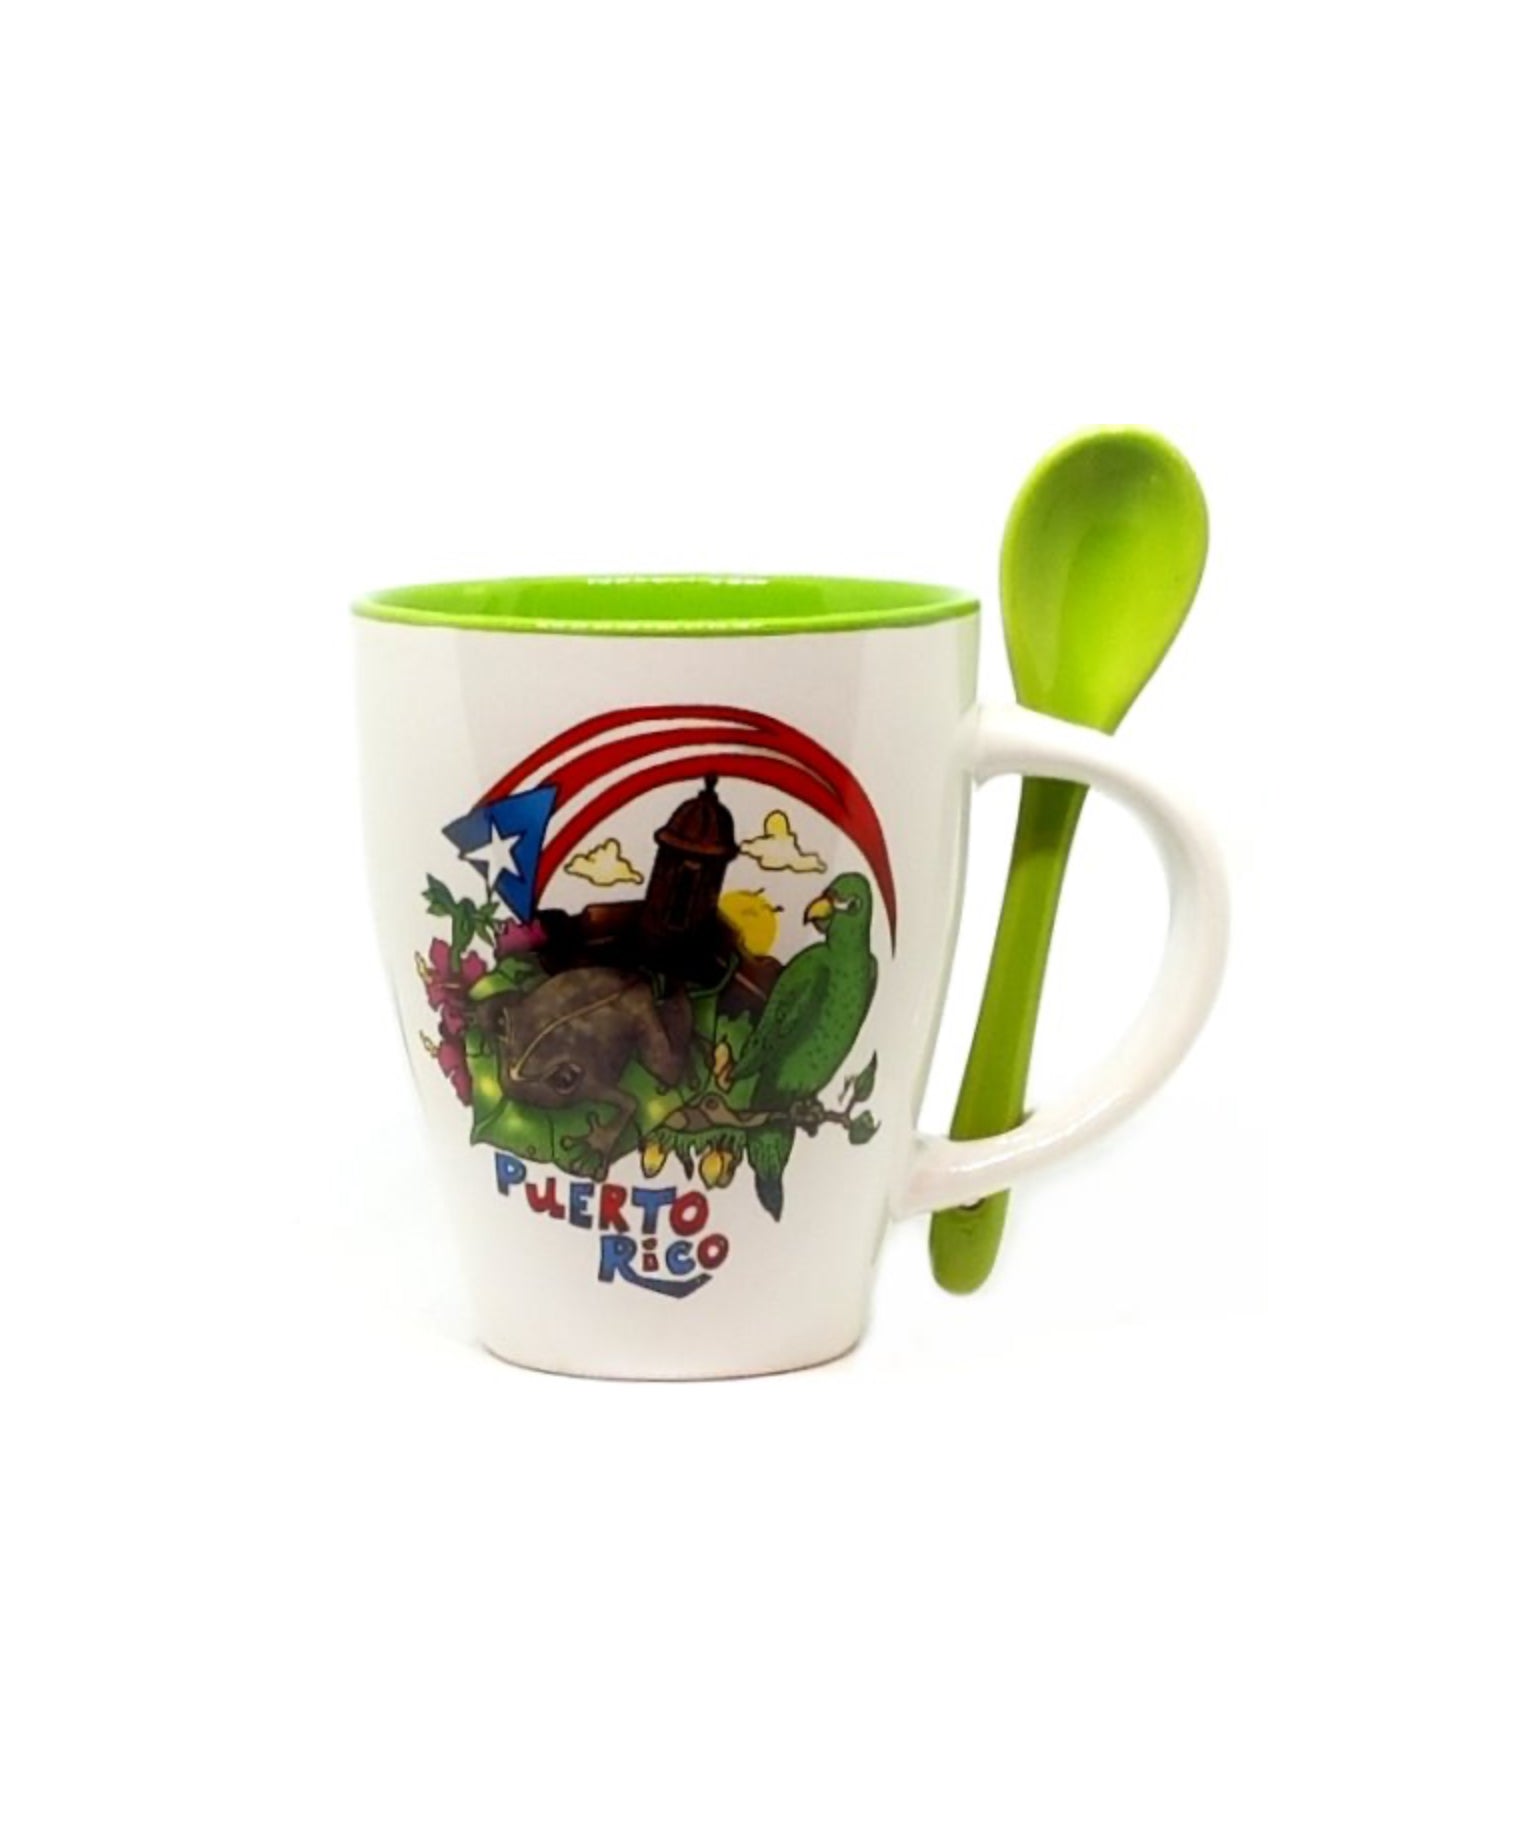 Puerto Rico Coffee Cup with Spoon Handel Ceramics Mug 10oz